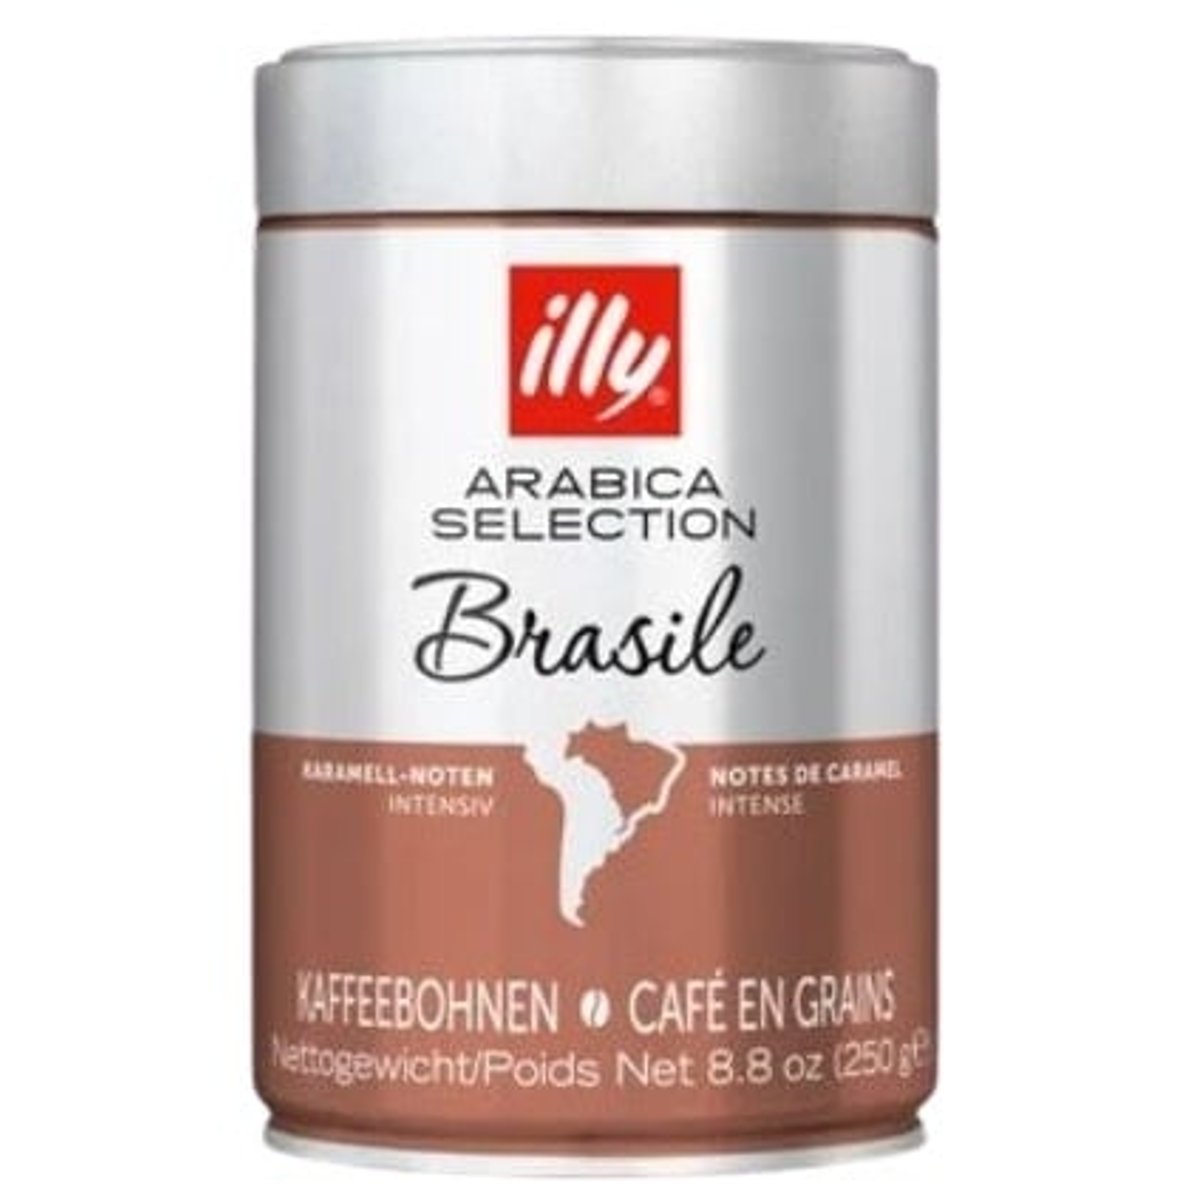 illy Monoarabica Brazil zrnková káva